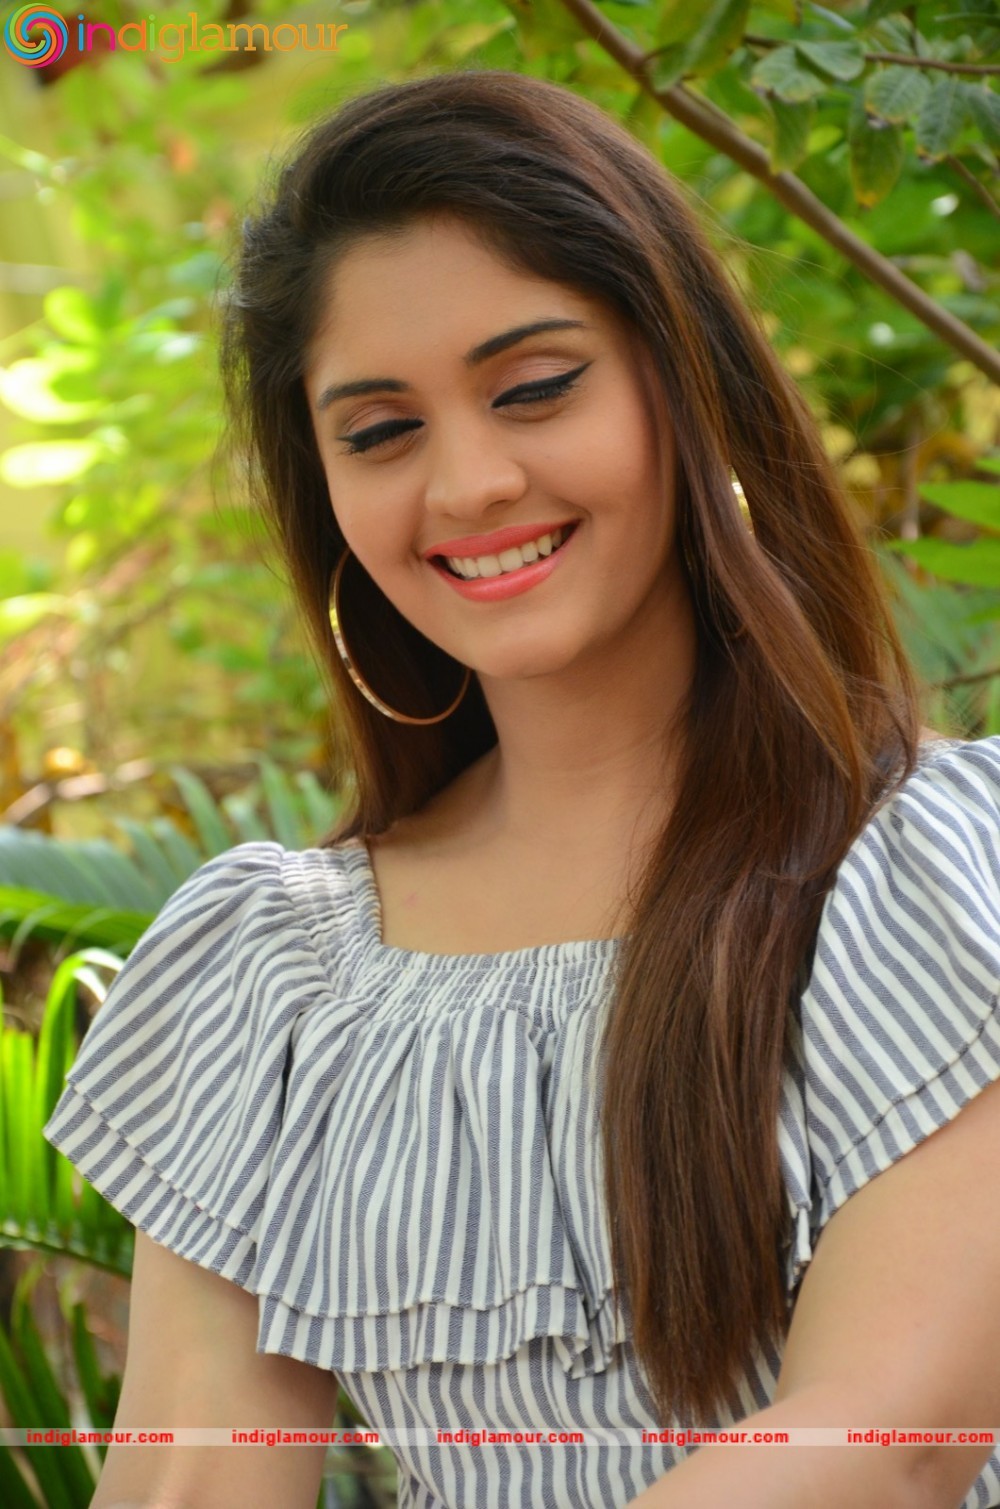 Surabhi Actress HD photos,images,pics and stills-indiglamour.com #444175